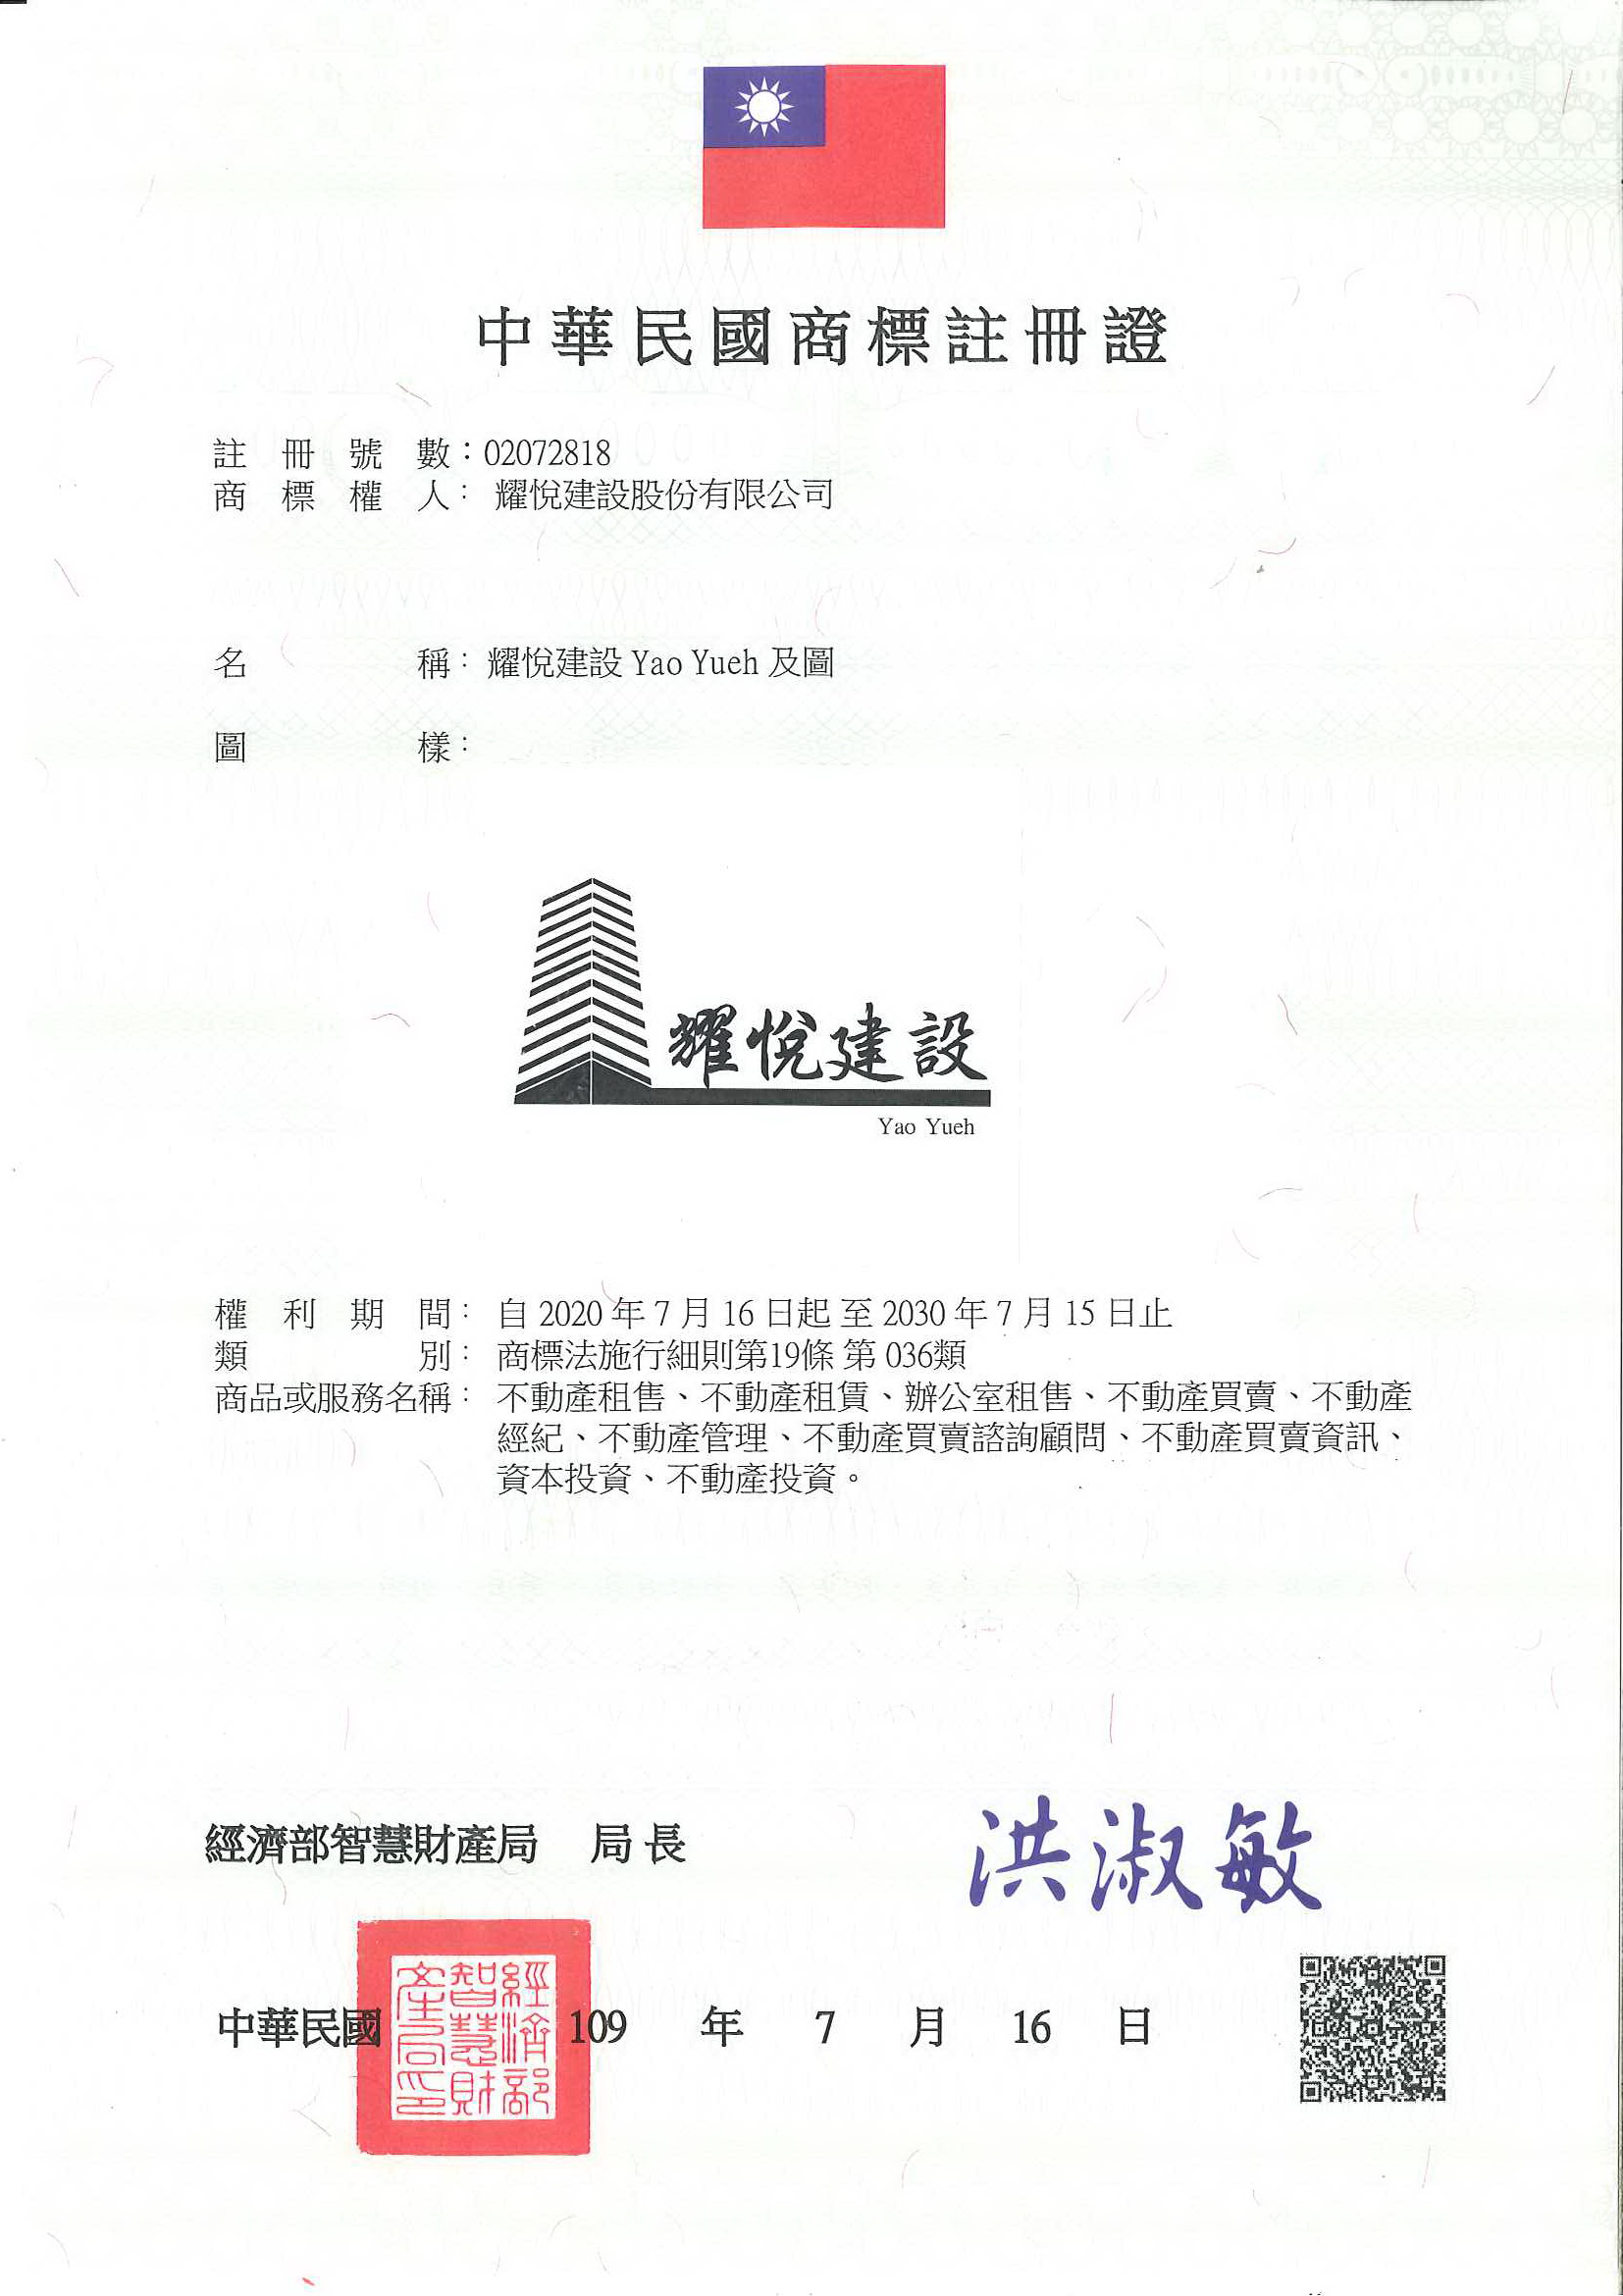 此為耀月建設Yao Yuch名稱及圖的中華民國商標註冊證